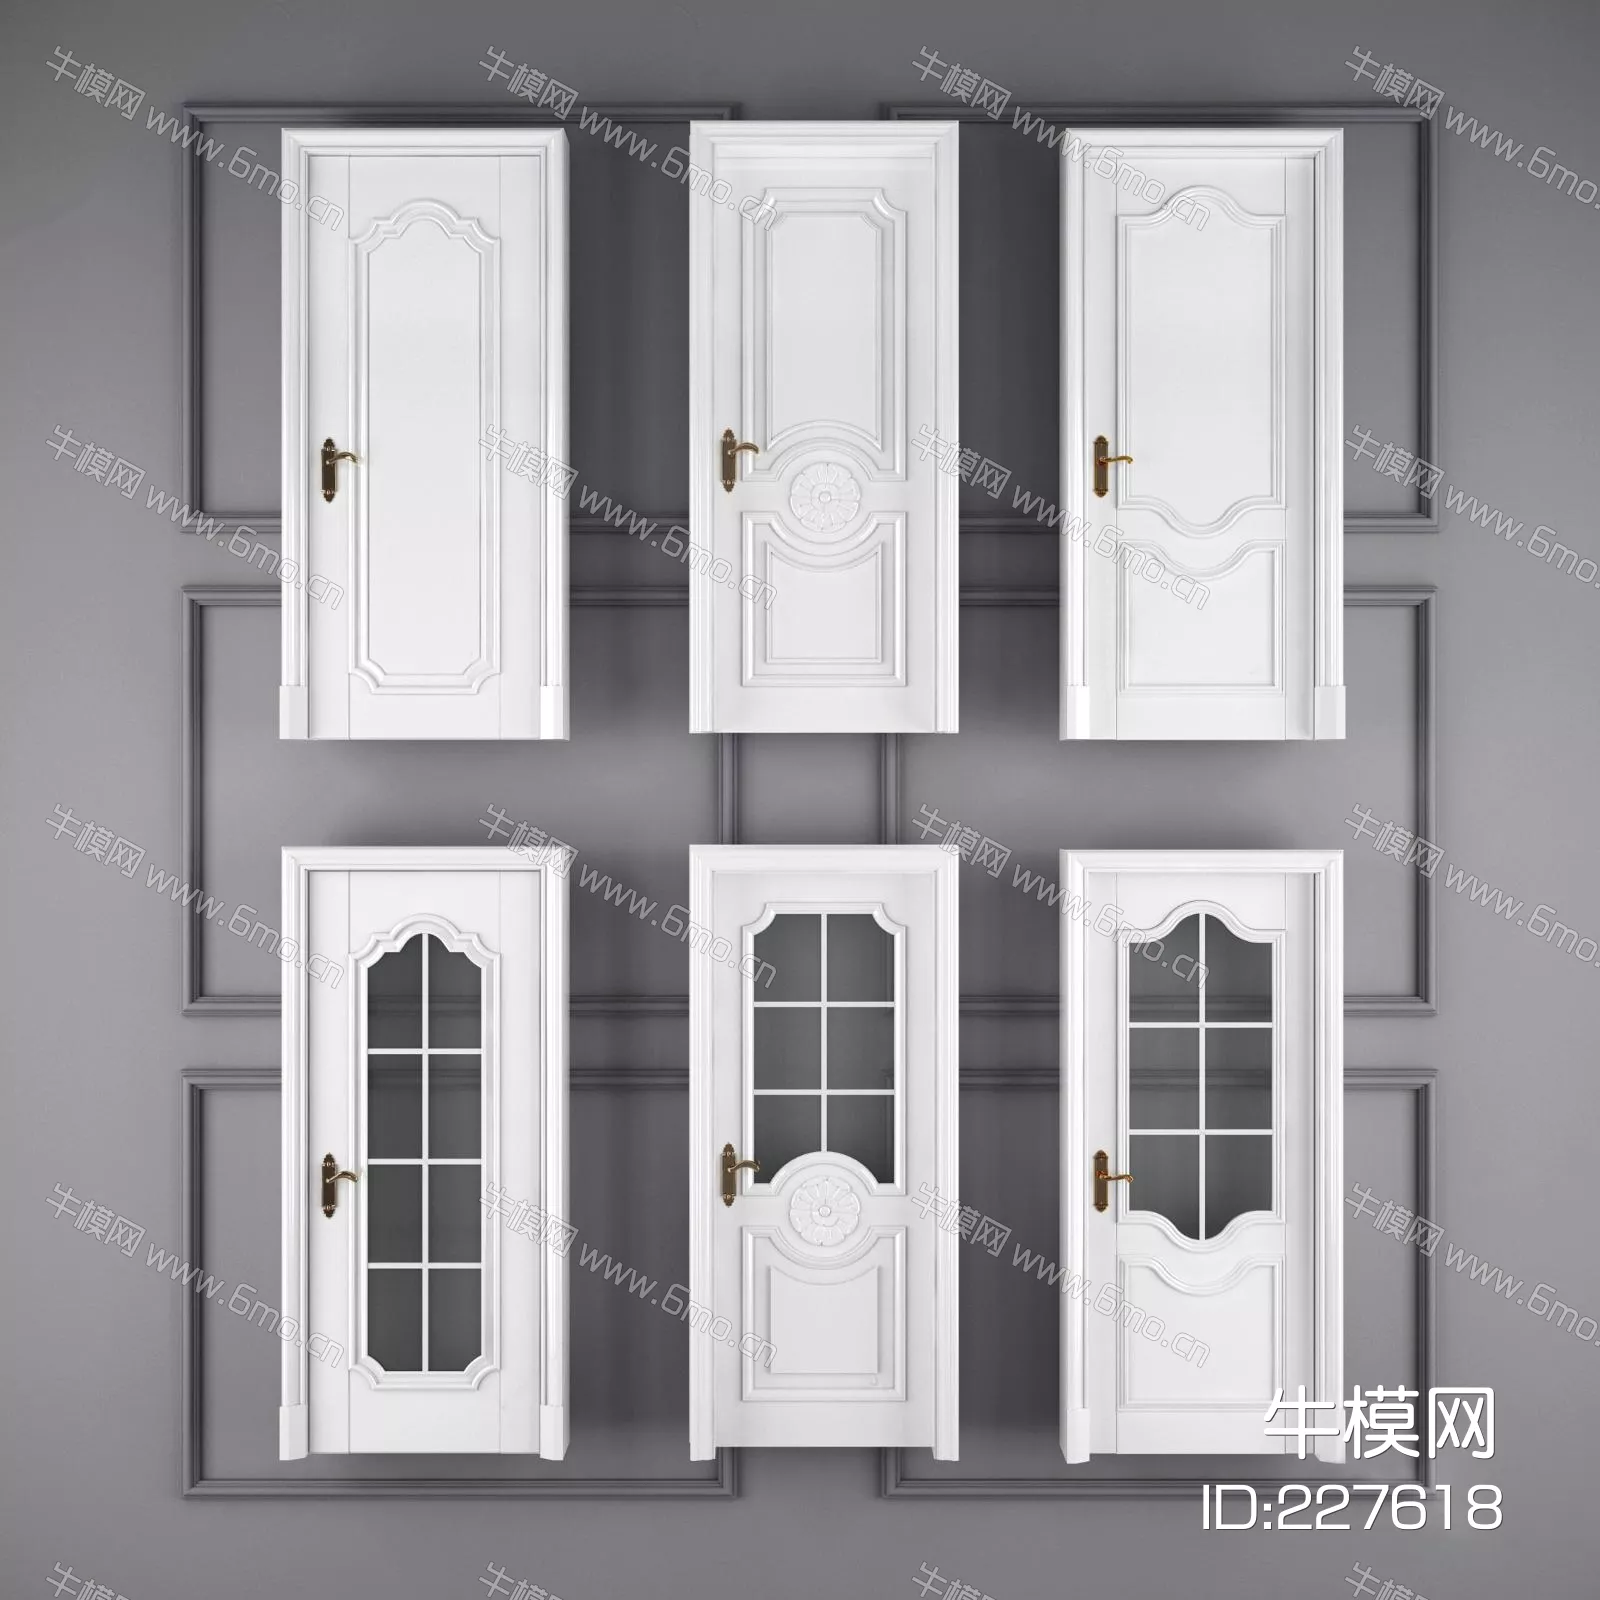 EUROPE DOOR AND WINDOWS - SKETCHUP 3D MODEL - ENSCAPE - 227618